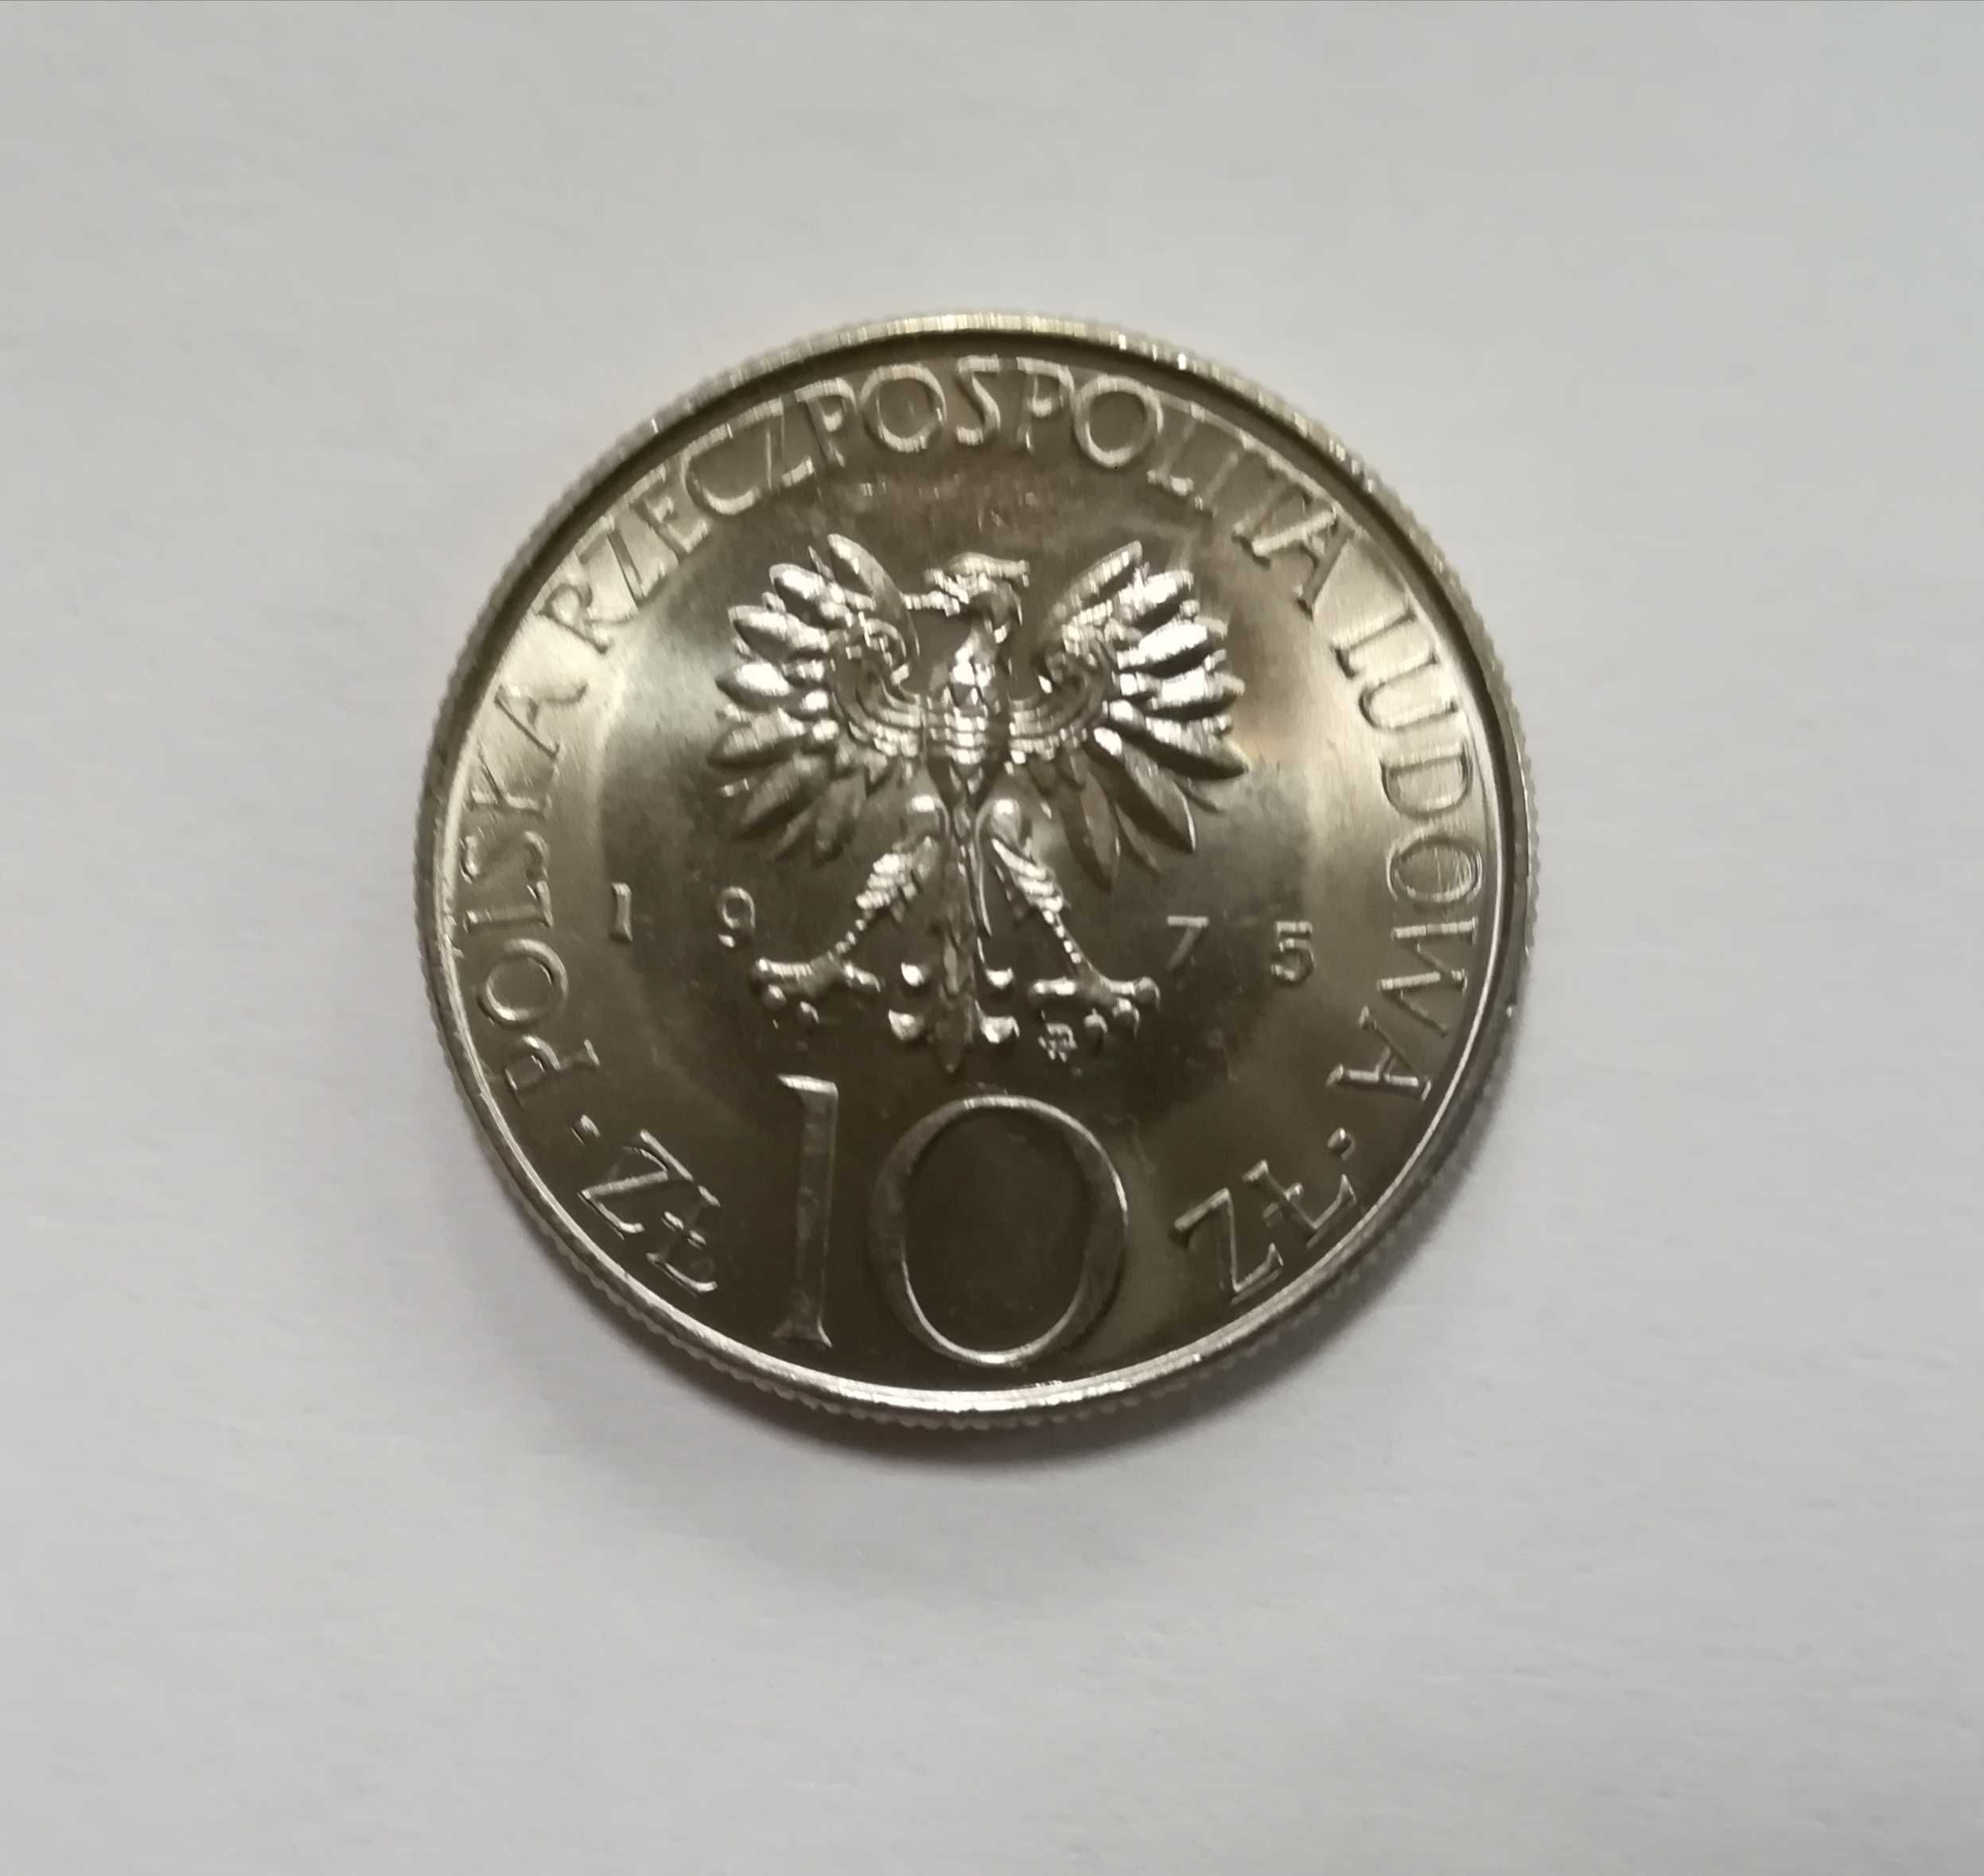 Moneta 10 zł A. Mickiewicz z 1975 r. Stan menniczy zbliżony do ideału.